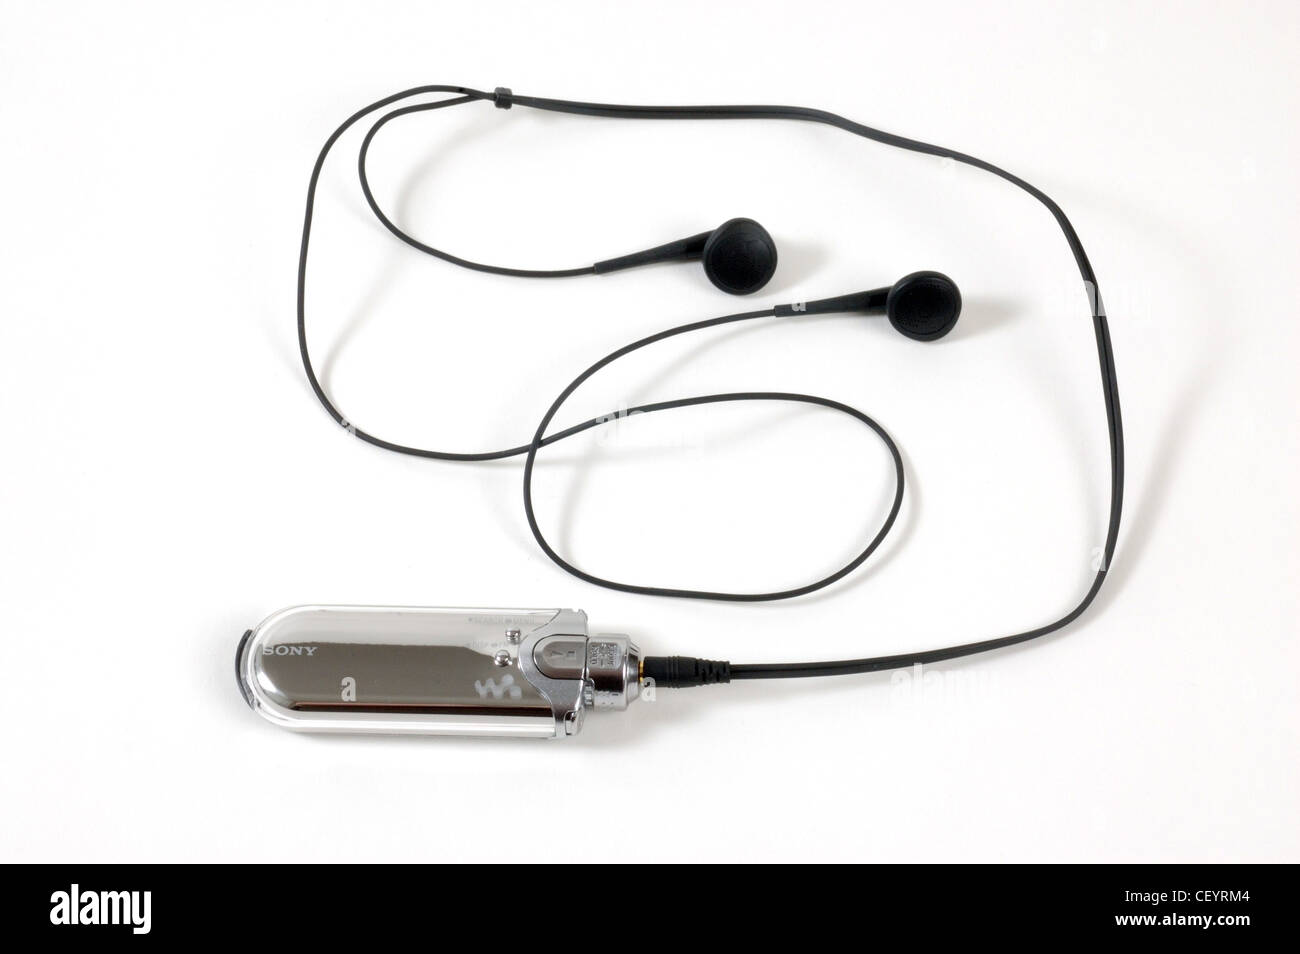 Sony player headphones immagini e fotografie stock ad alta risoluzione -  Alamy